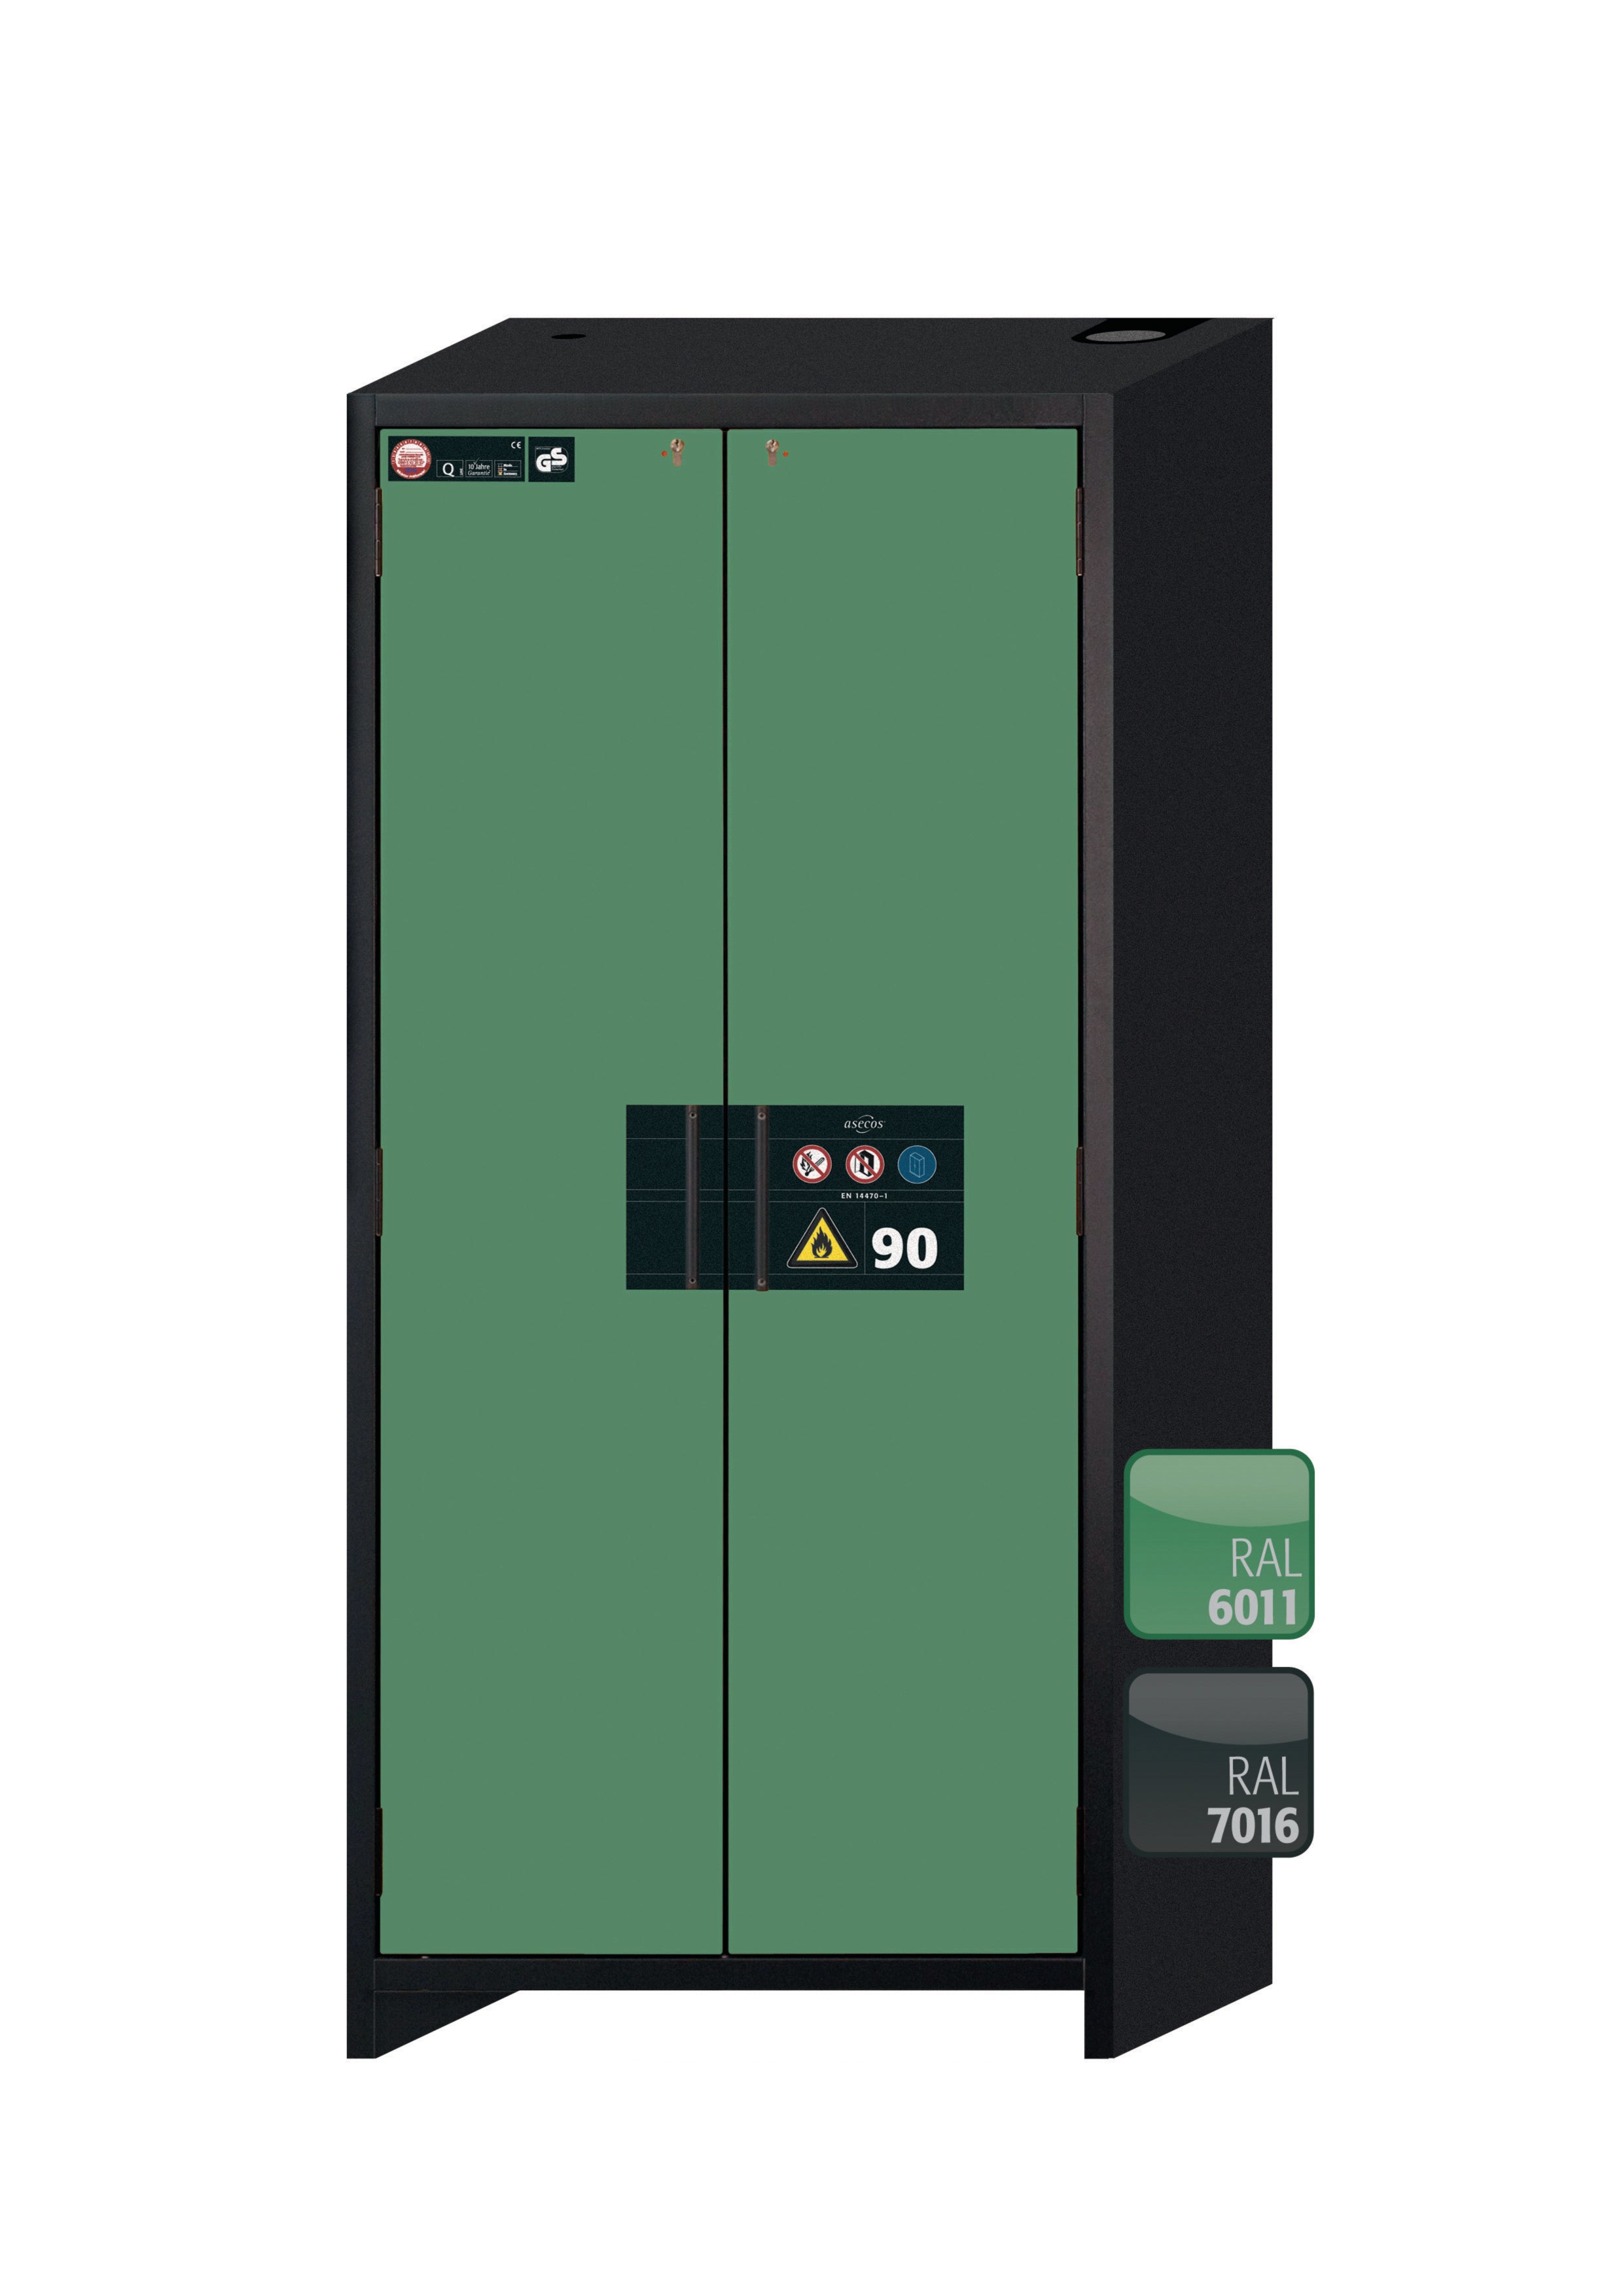 Typ 90 Sicherheitsschrank Q-CLASSIC-90 Modell Q90.195.090 in resedagrün RAL 6011 mit 4x Auszugswanne Standard (Edelstahl 1.4301)